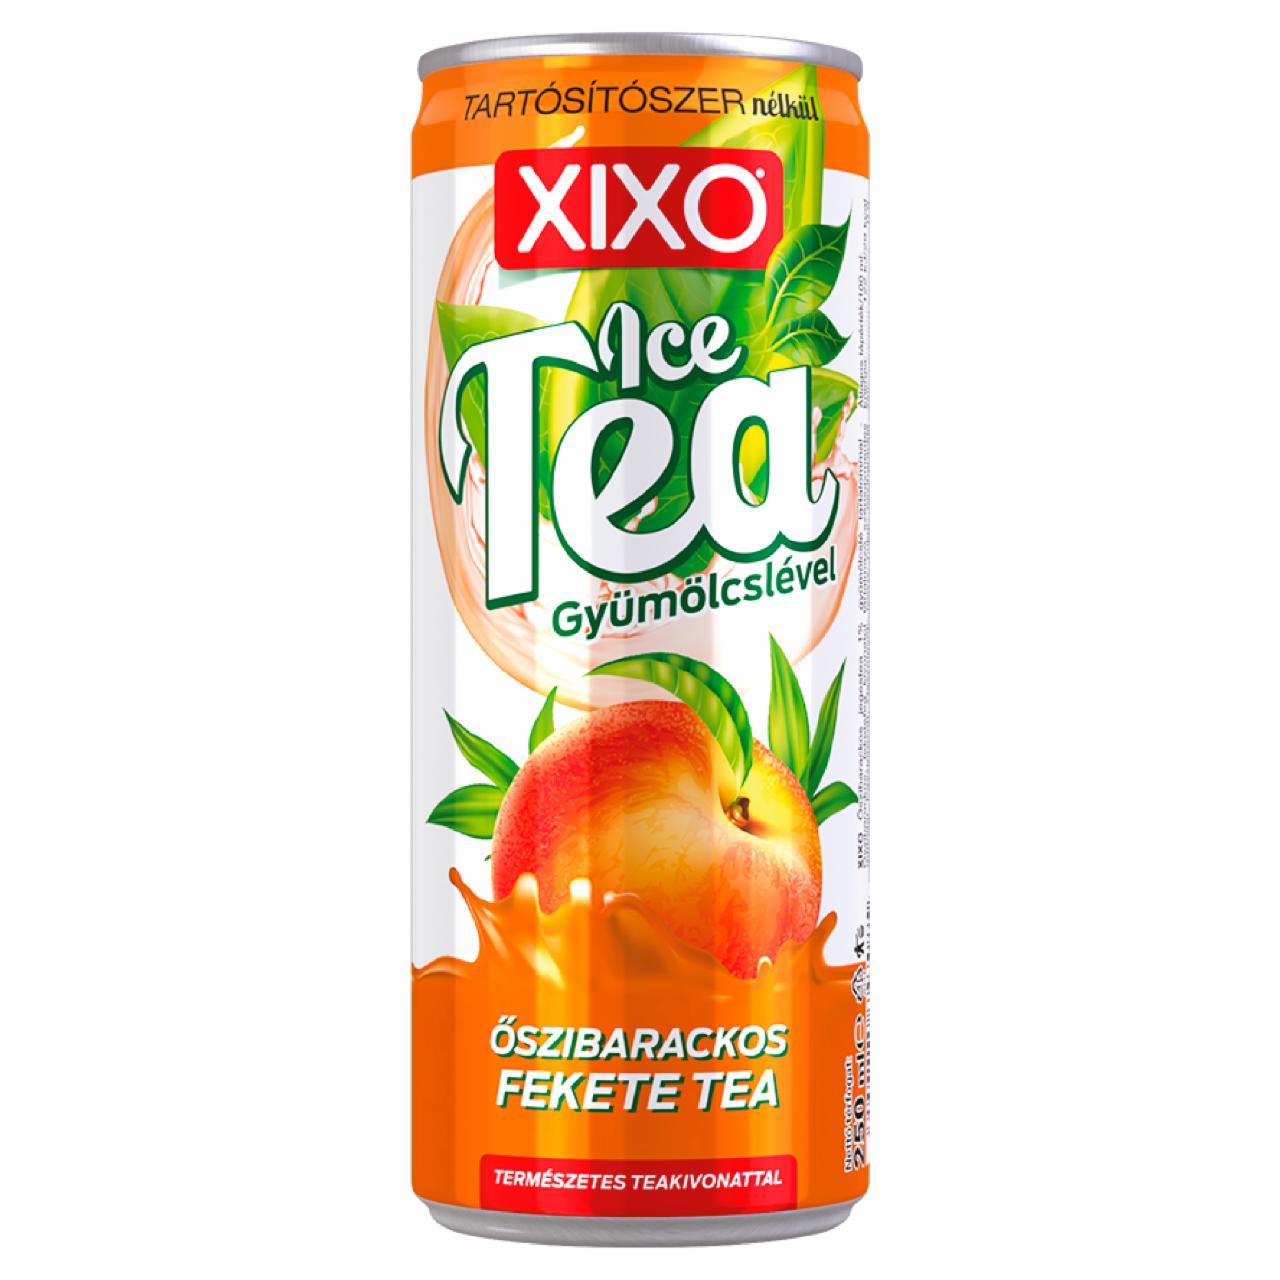 Képek - XIXO Ice Tea őszibarackos fekete tea